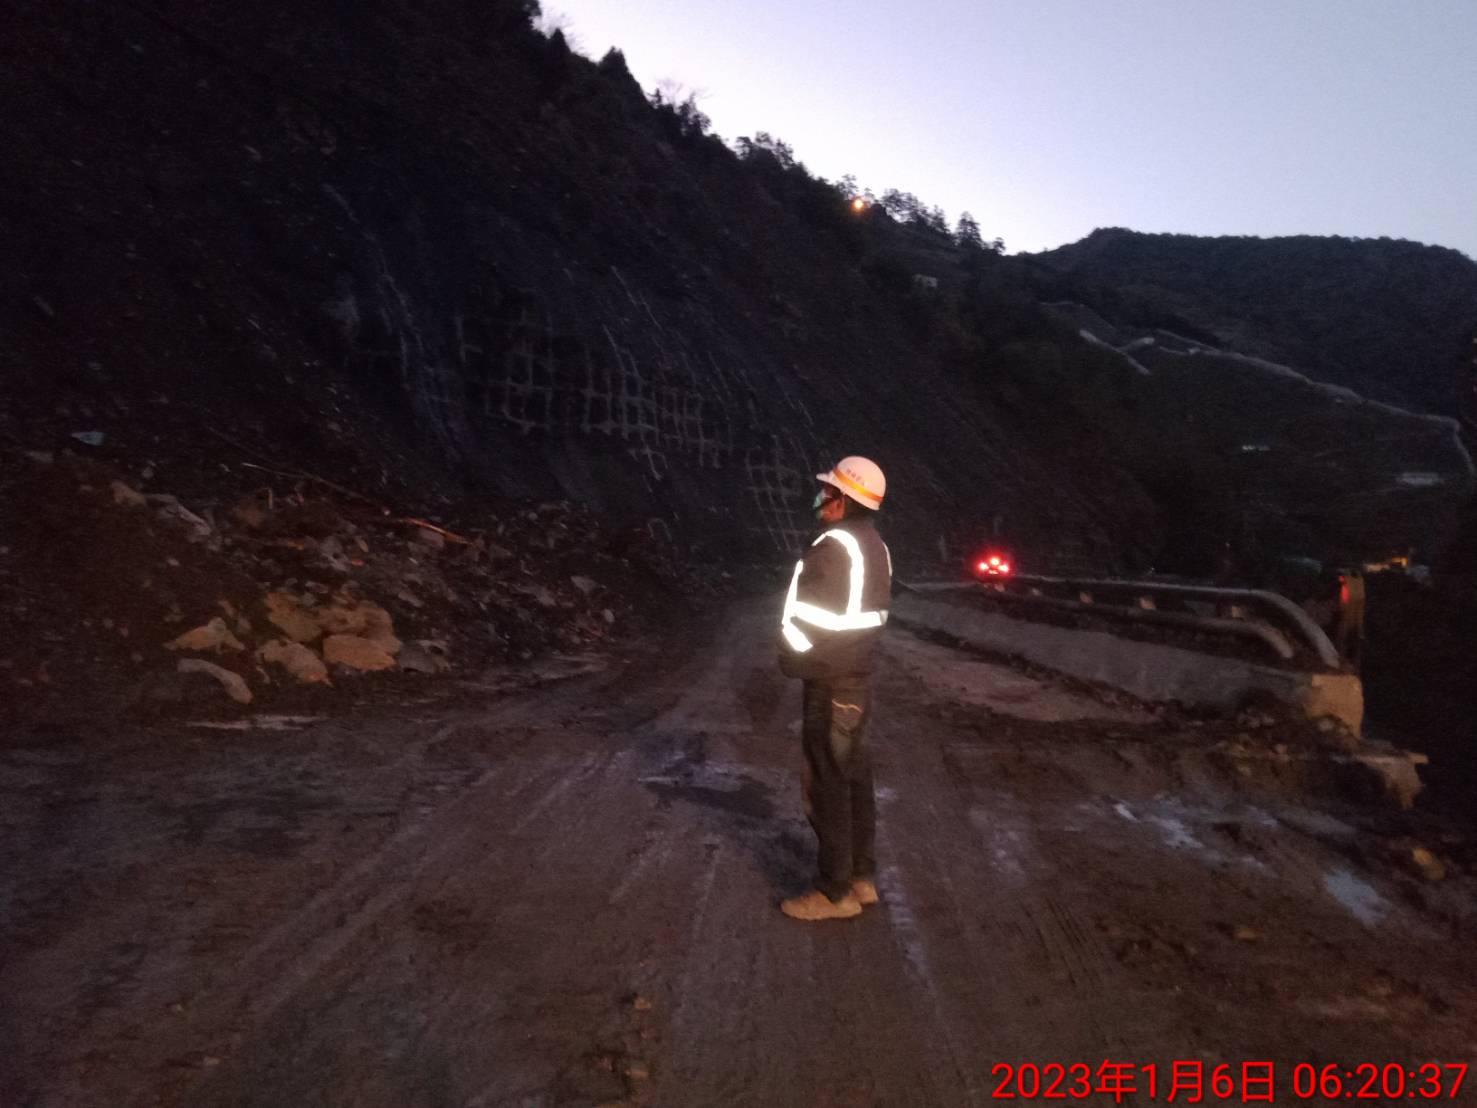 台8線77k靈甫橋災害路段於1月9日起管制交通搶修2